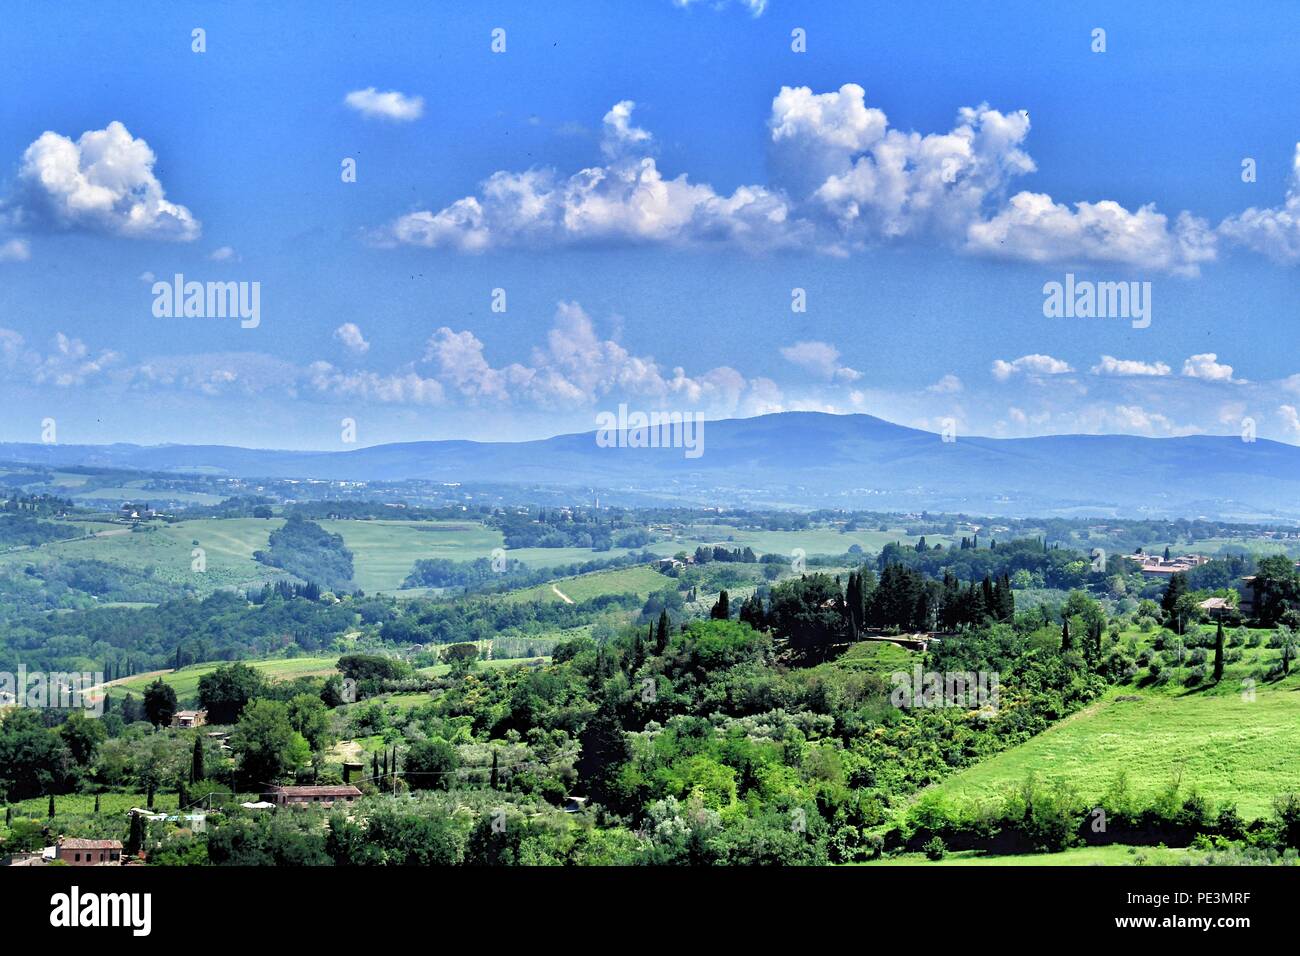 Una bella vista del paesaggio della Toscana verdi pascoli, terre, alberi e colline Foto Stock